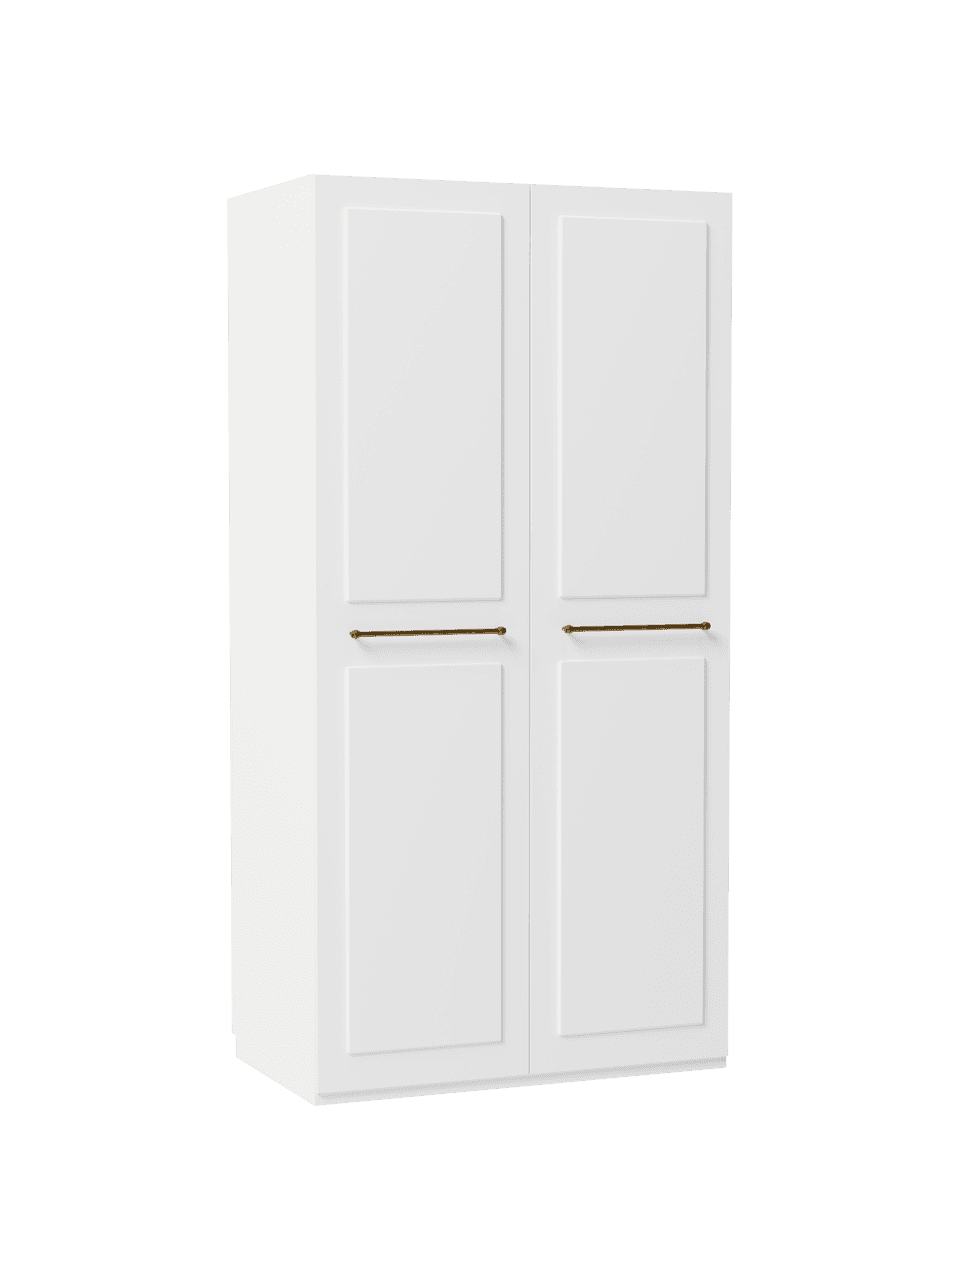 Modulaire draaideurkast Charlotte in wit, 100 cm breed, meerdere varianten, Frame: met melamine beklede spaa, Wit, Basis interieur, hoogte 200 cm